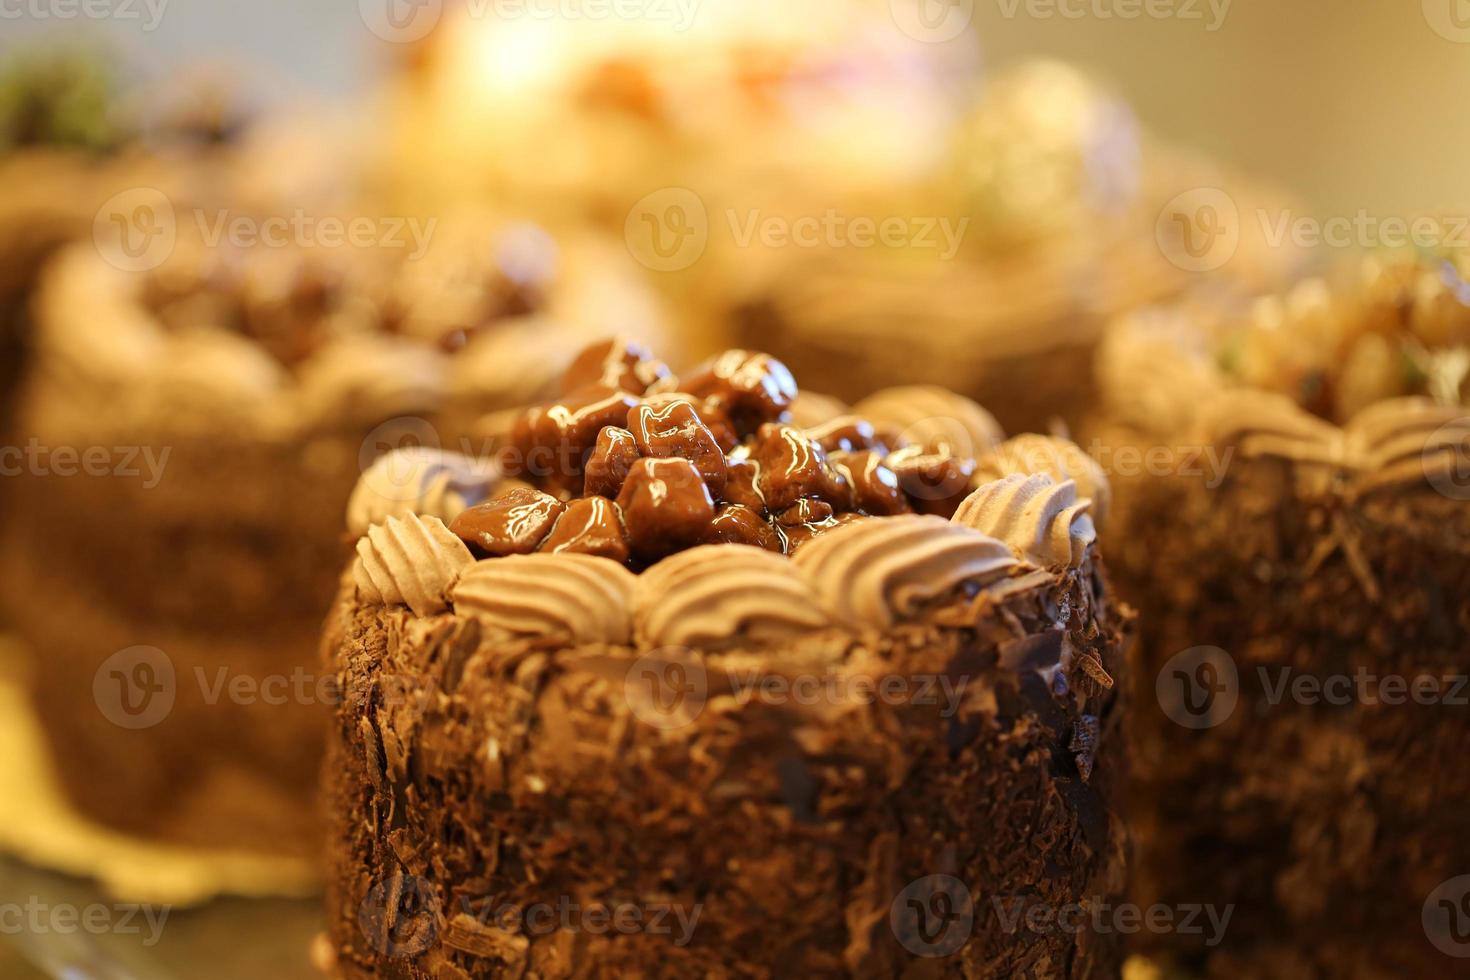 pastelaria simples com gotas de chocolate, produtos farinhentos, padaria e padaria foto